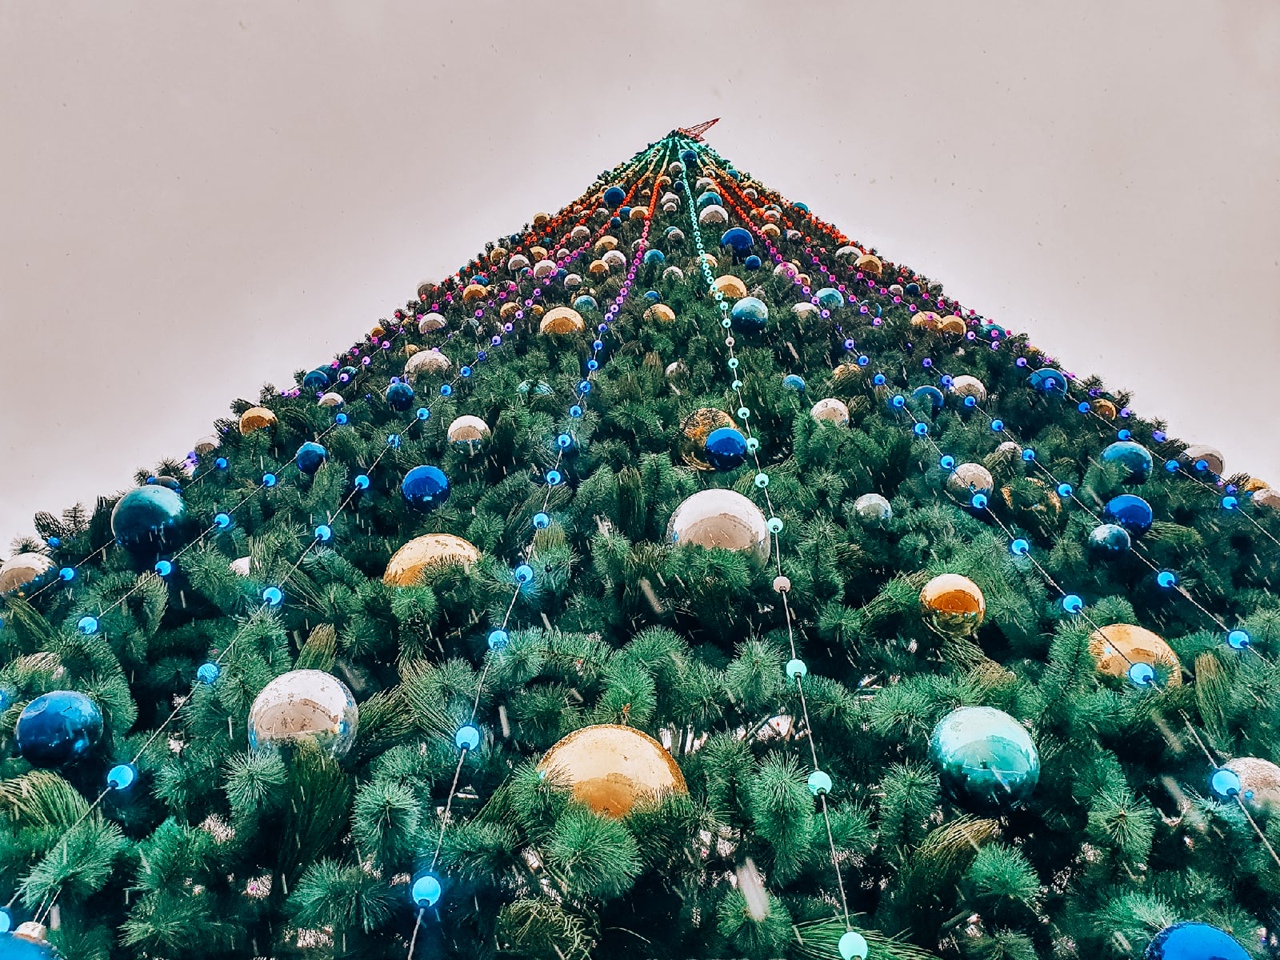 Главную новогоднюю елку Тулы украсили гирлянды и шары: ФОТО